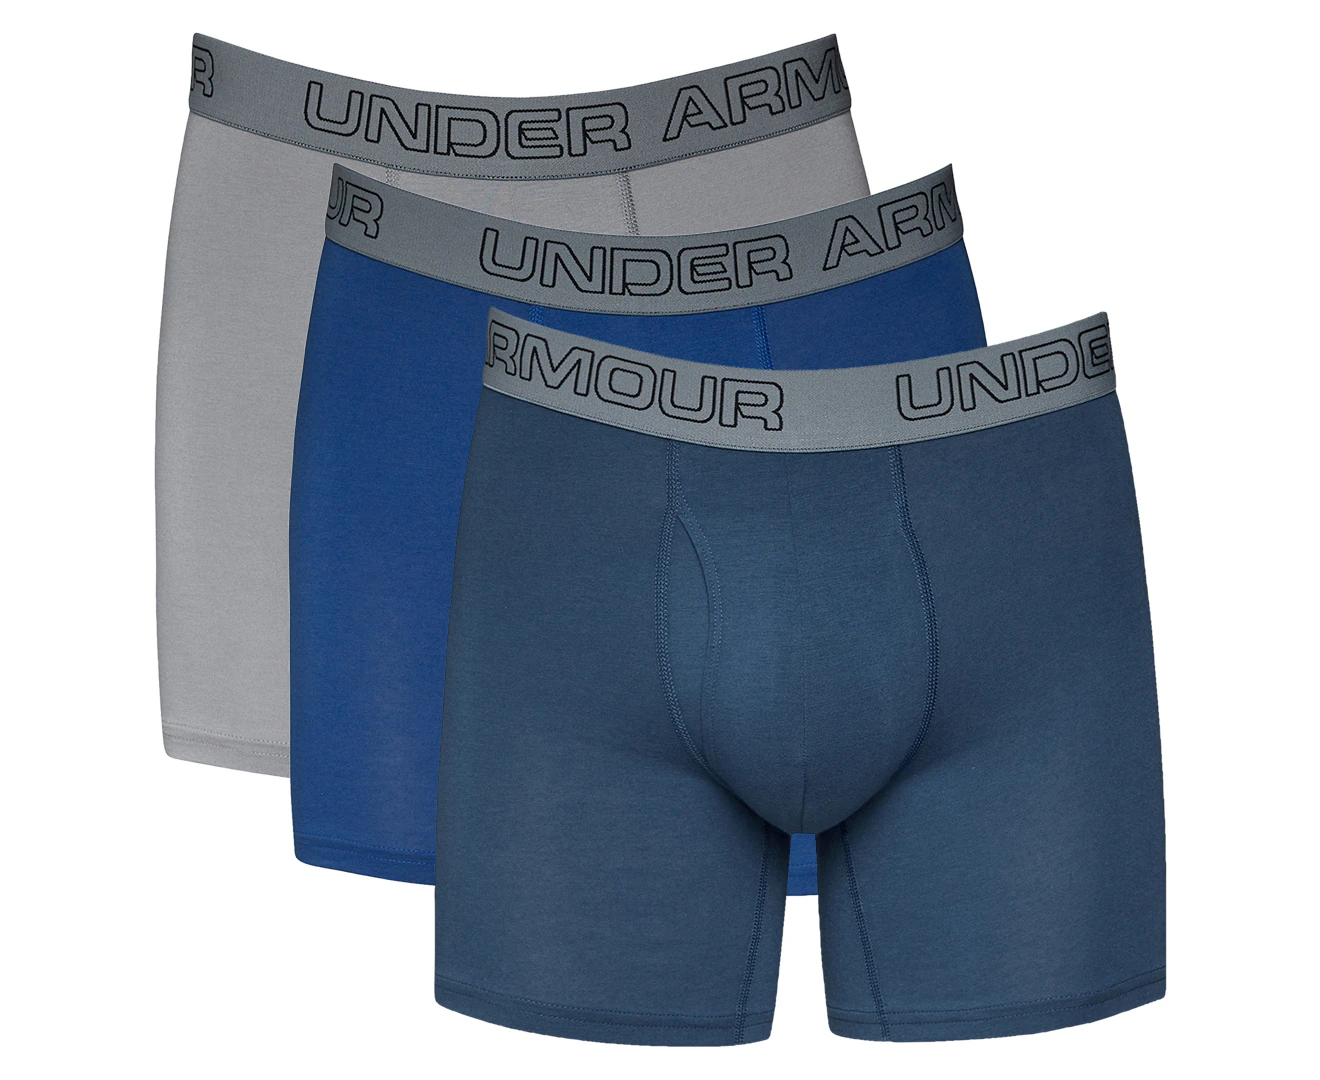 Women's UA Outlet - Underwear